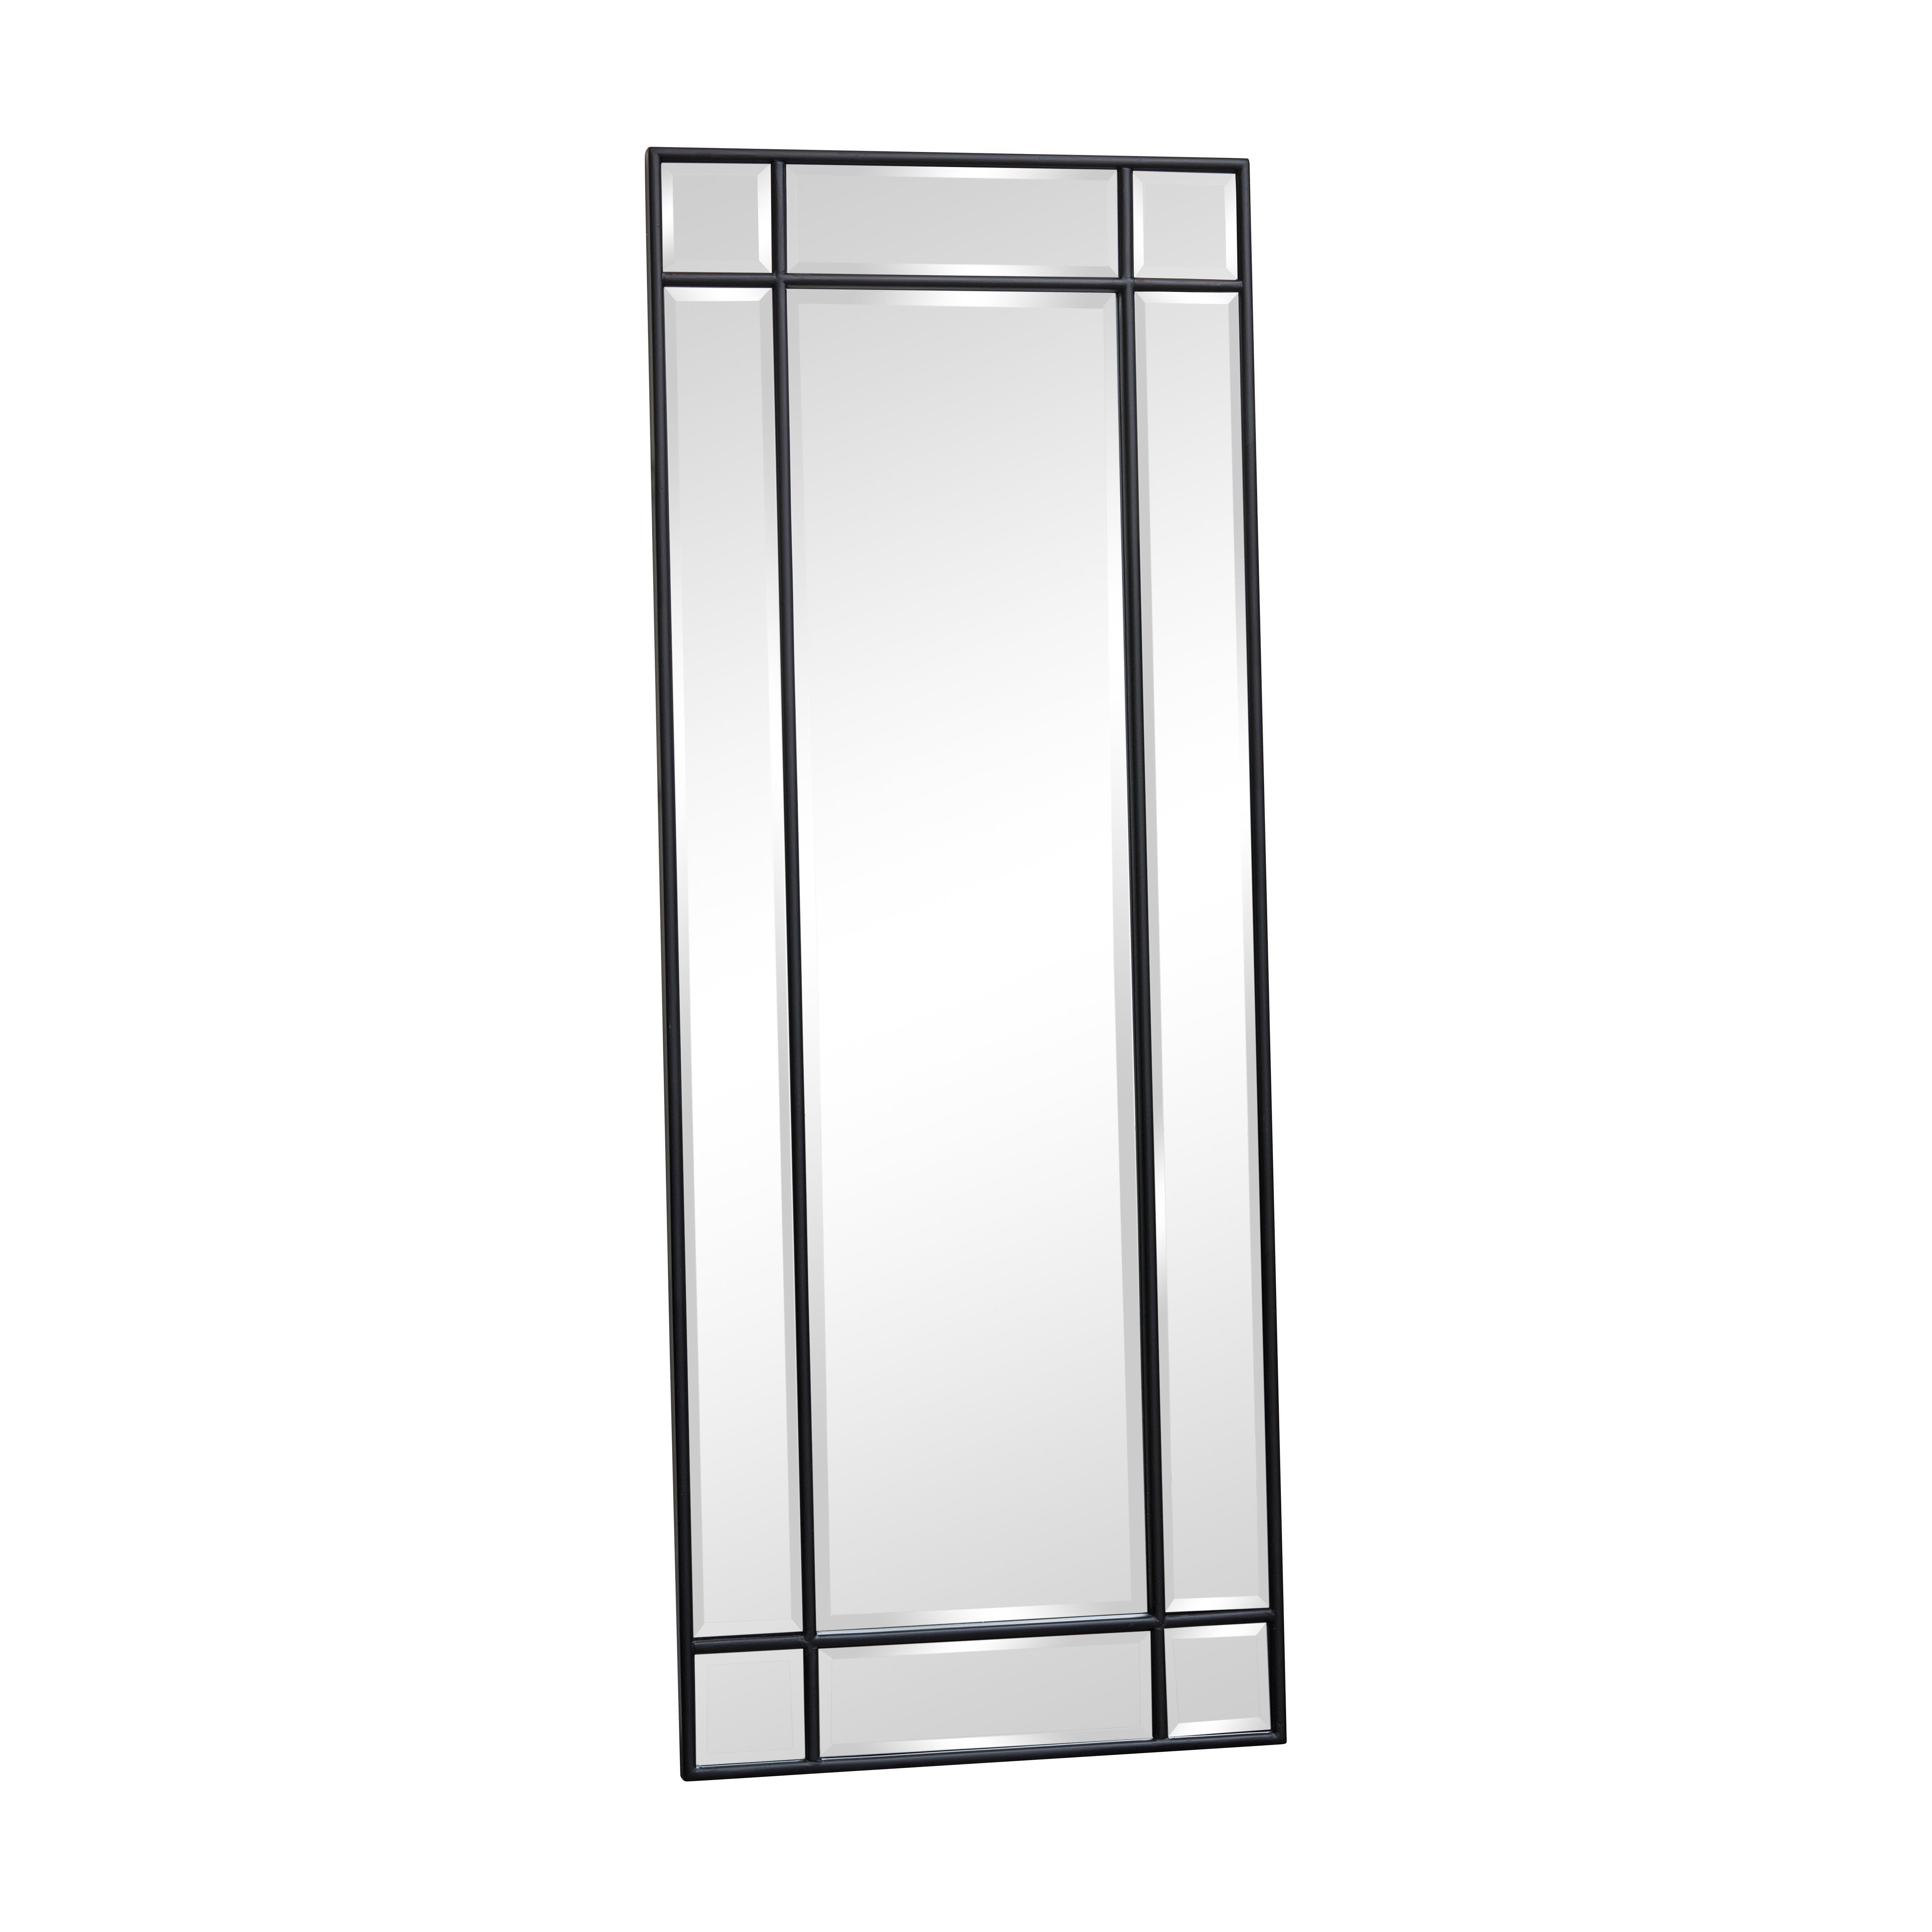 Black Framed Art Deco Wall / Leaner Mirror 142 Cm X 54 Cm - image 1